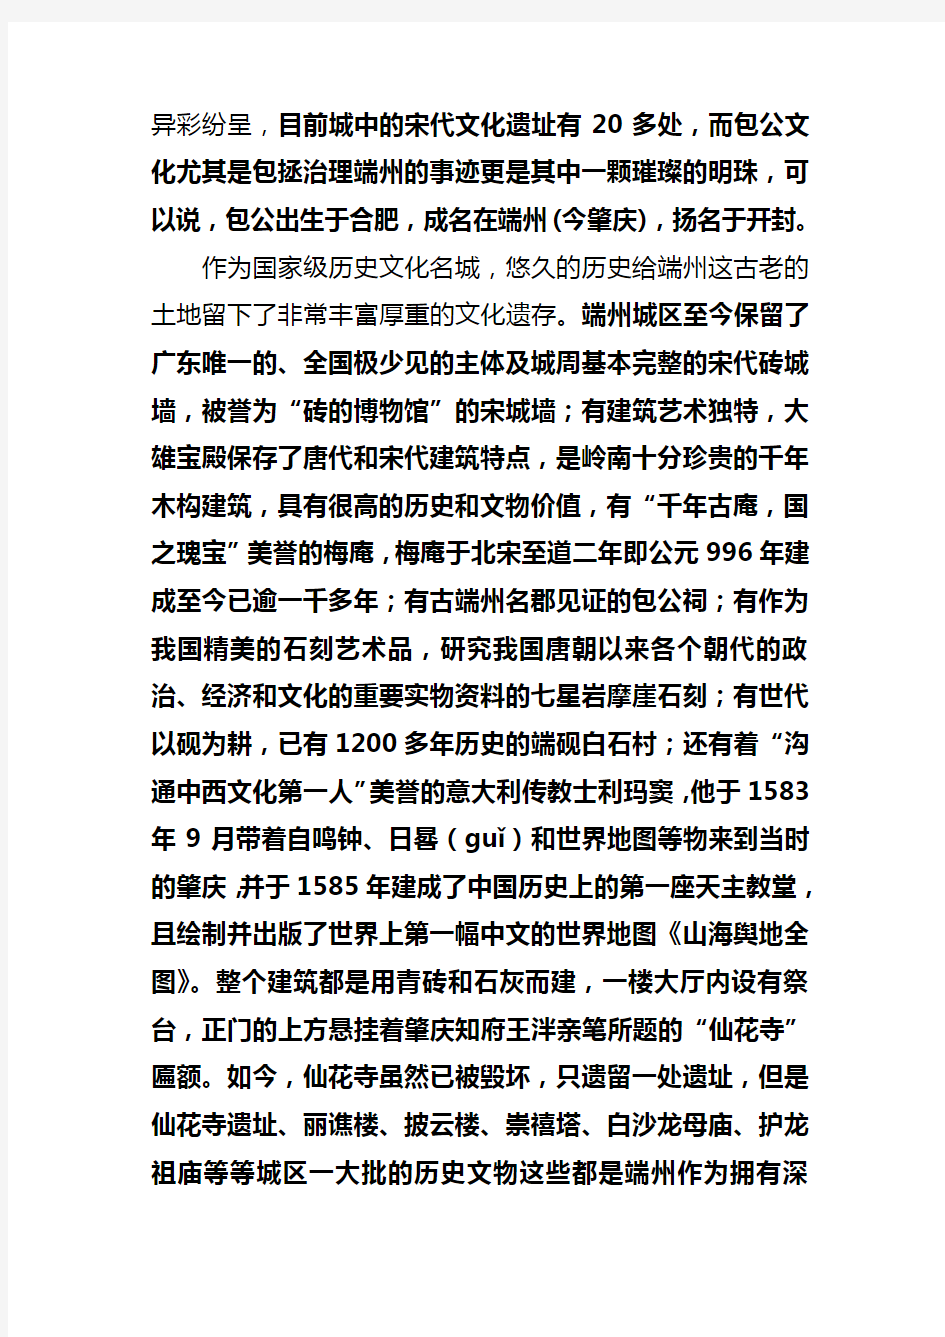 端州对“肇庆是广府文化发祥地”的历史佐证